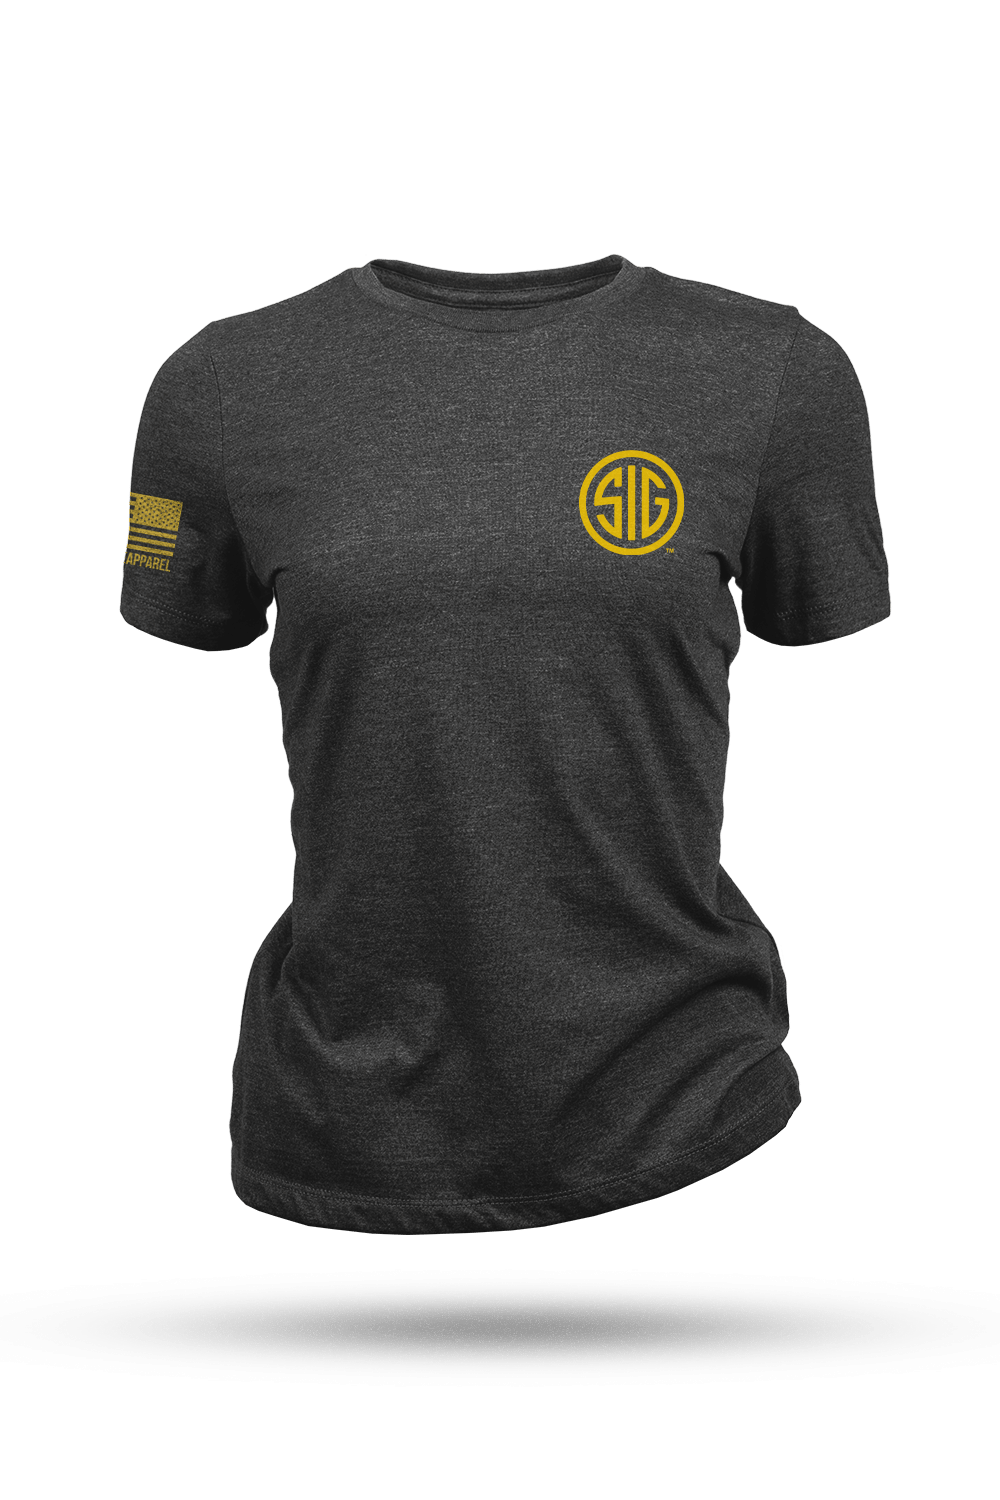 Women's T-Shirt - Sig Sauer - P226